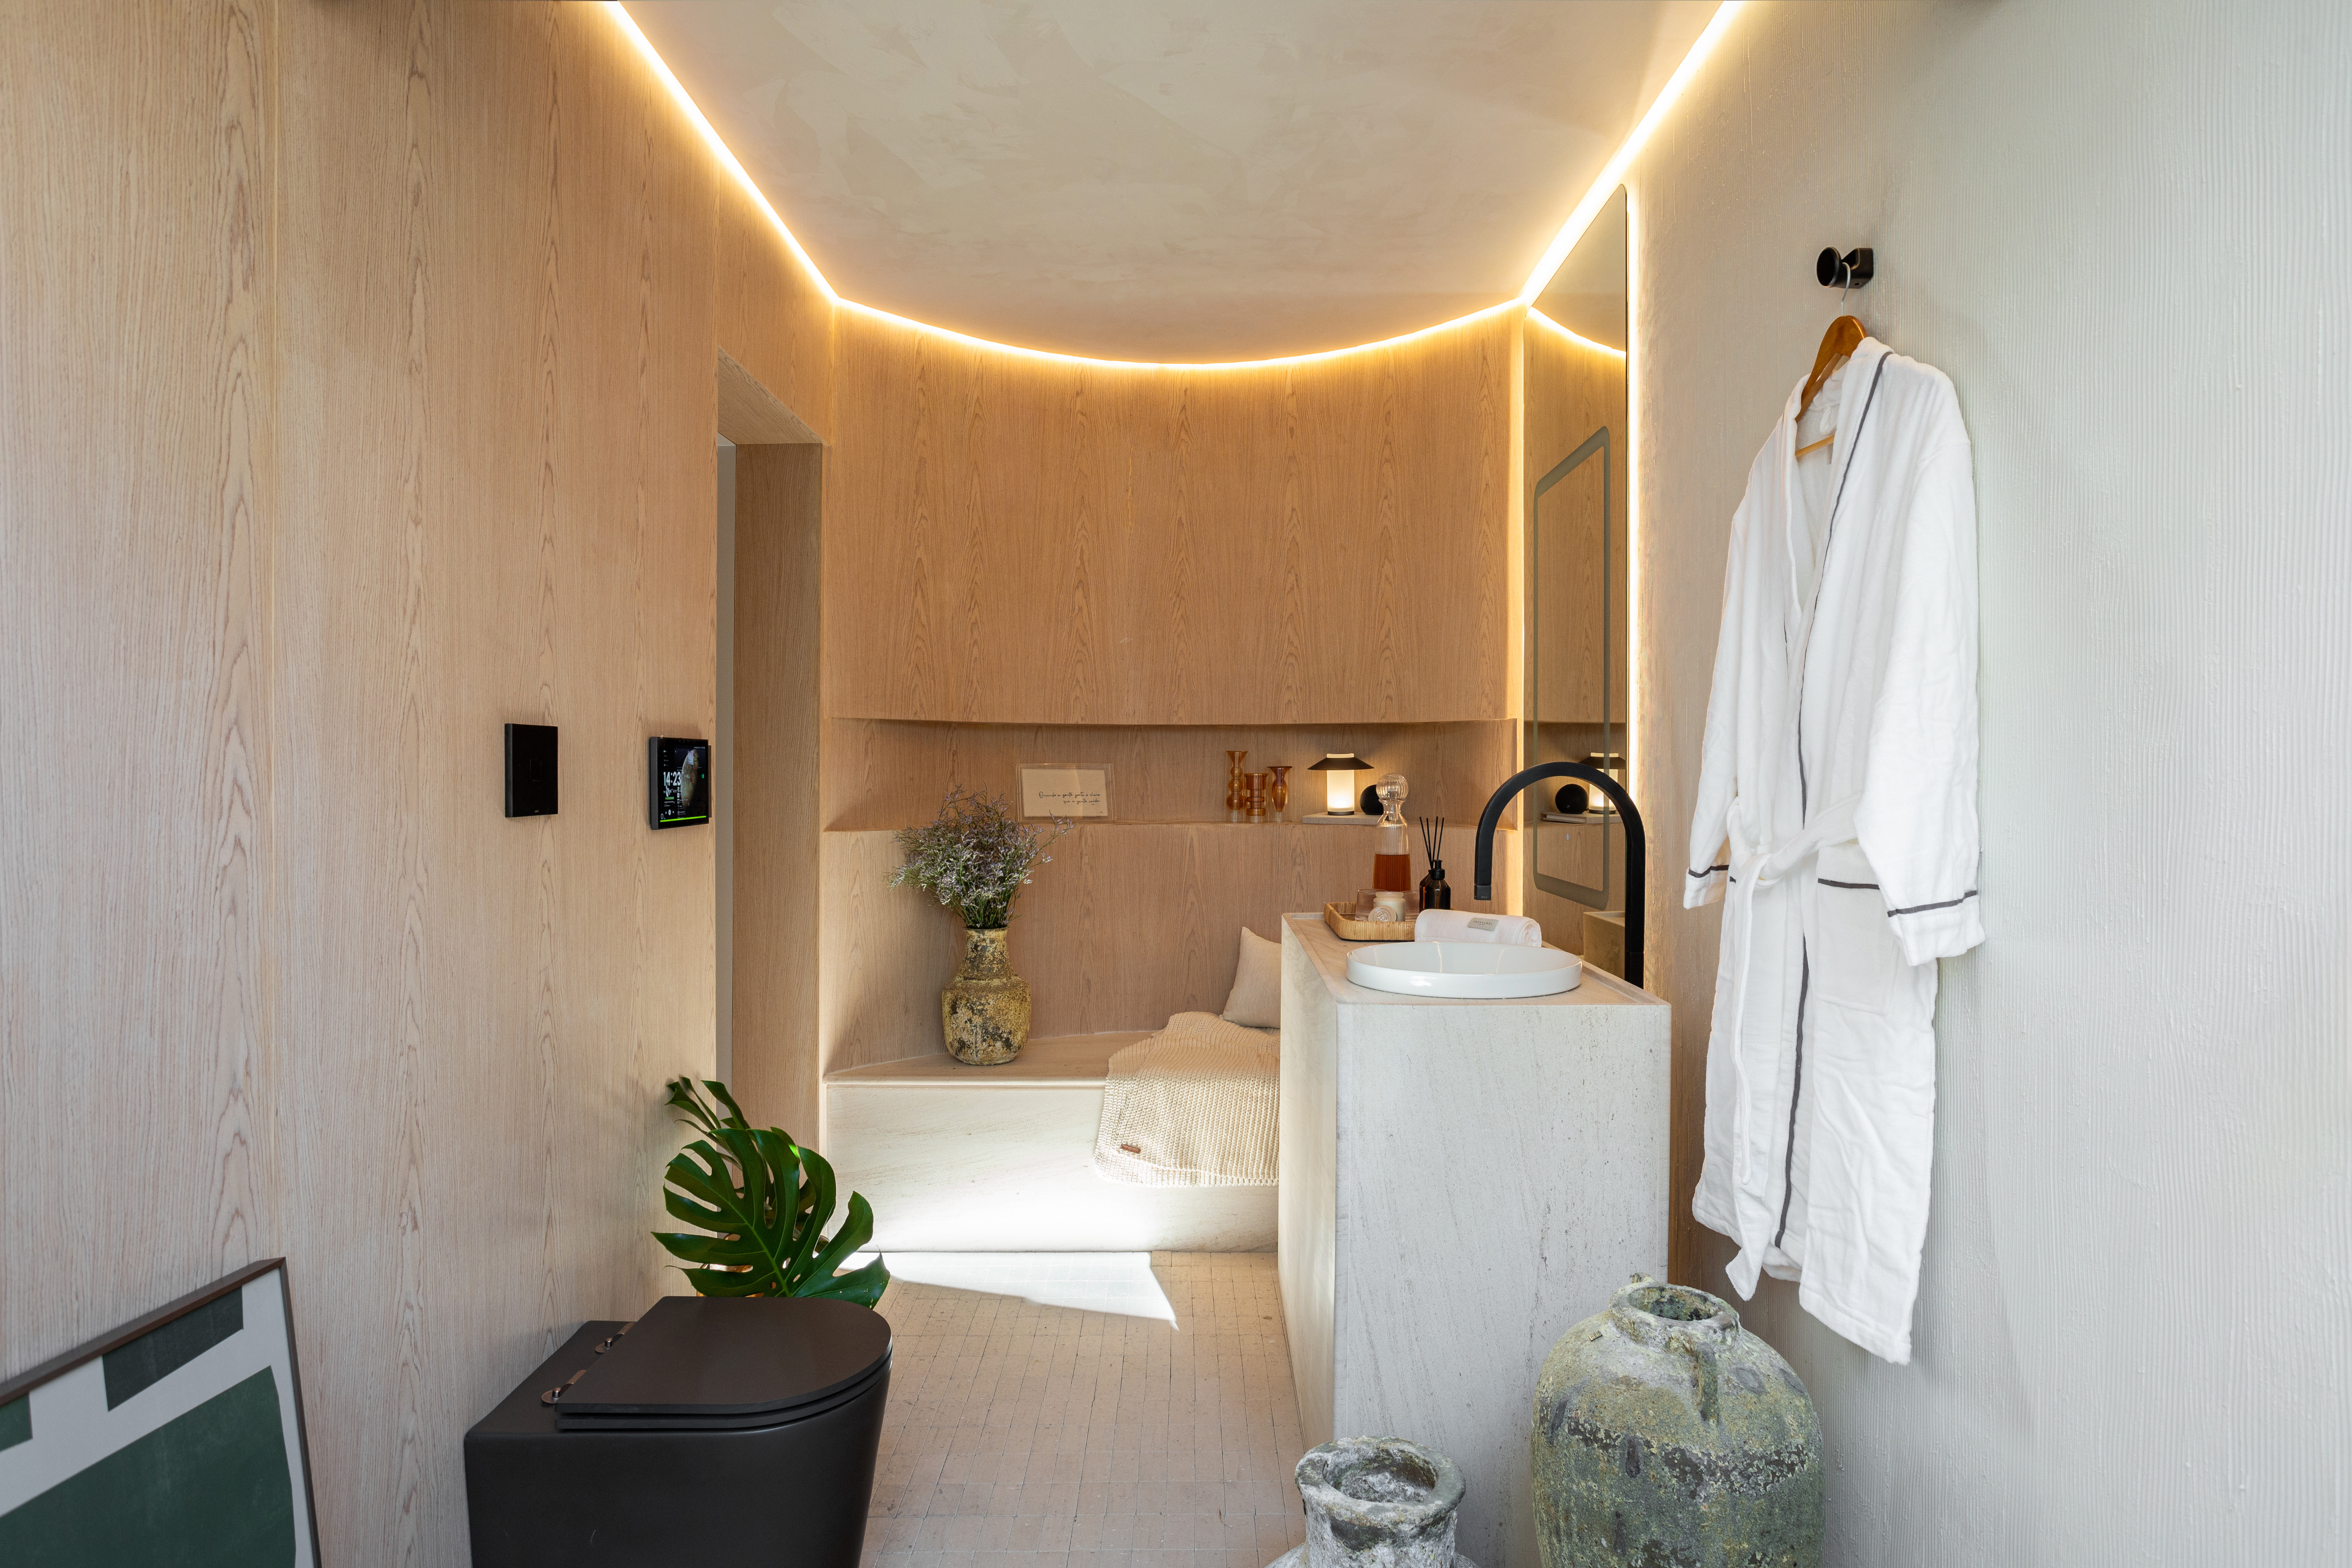 SPA em Casa: banheiro conecta arquitetura e natureza. Projeto de Bruno Dutkievicz e Raphael Meza. Na foto, banheiro com tons neutros e revestimentos variados